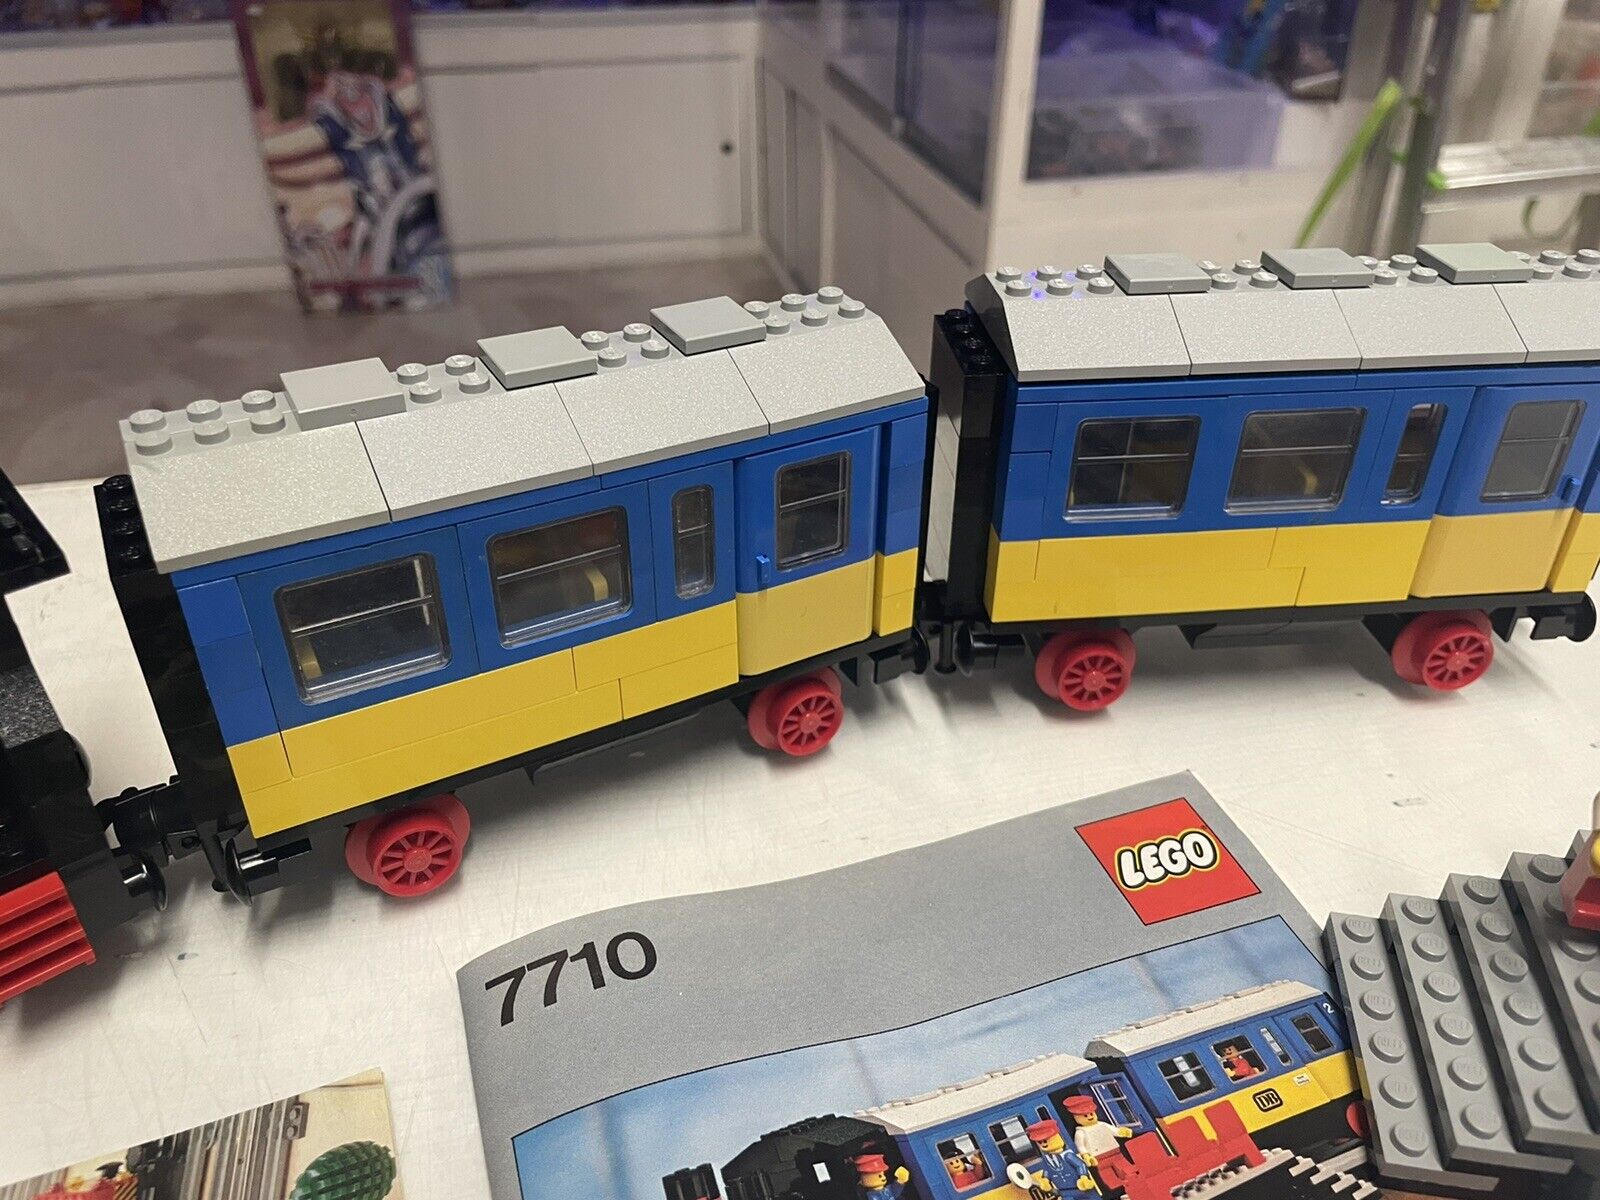 LEGO-4712-Train-9v-Push-Along-Passenger-Steam-Train-in-ITALIA-134356321700-4